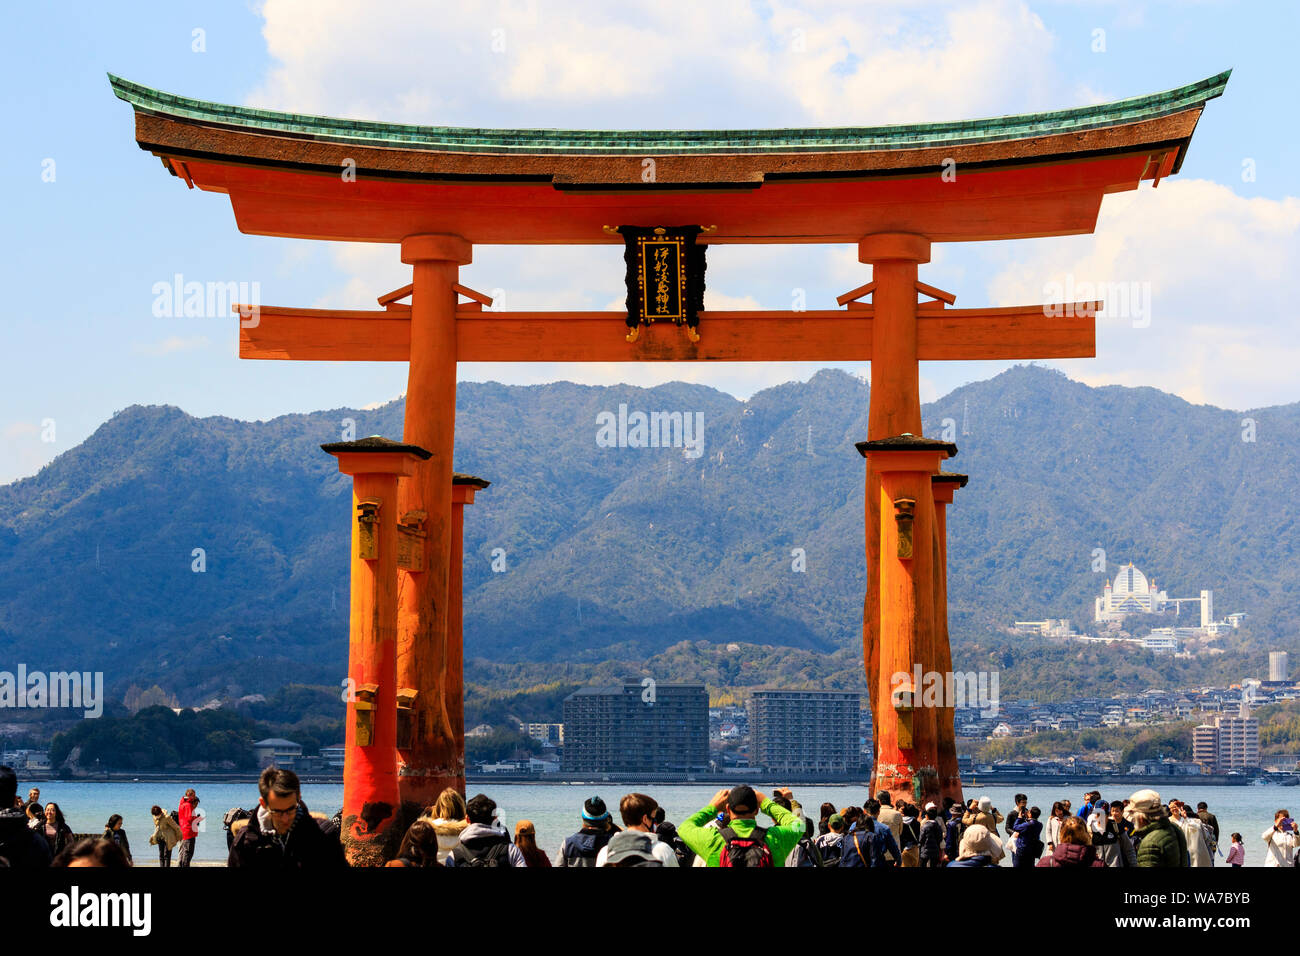 Le Japon, Miyajima. Le Grand Torii Otorii, ou du sanctuaire d'Itsukushima. Torii rouge sur le sable à marée basse et beaucoup de gens marcher autour d'elle. Banque D'Images